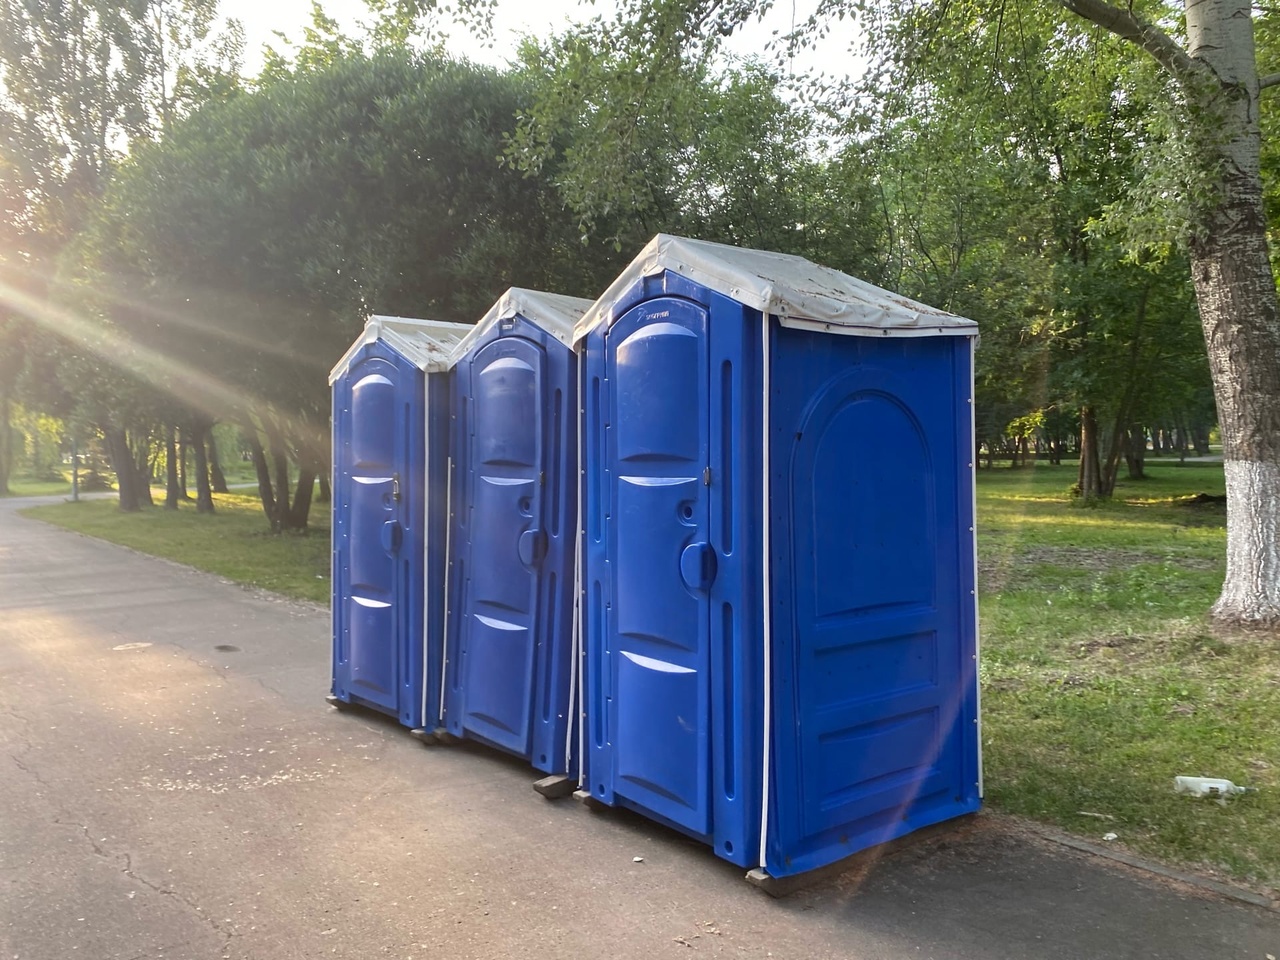  Новый общественный туалет появится на 2-ой очереди набережной Самары 